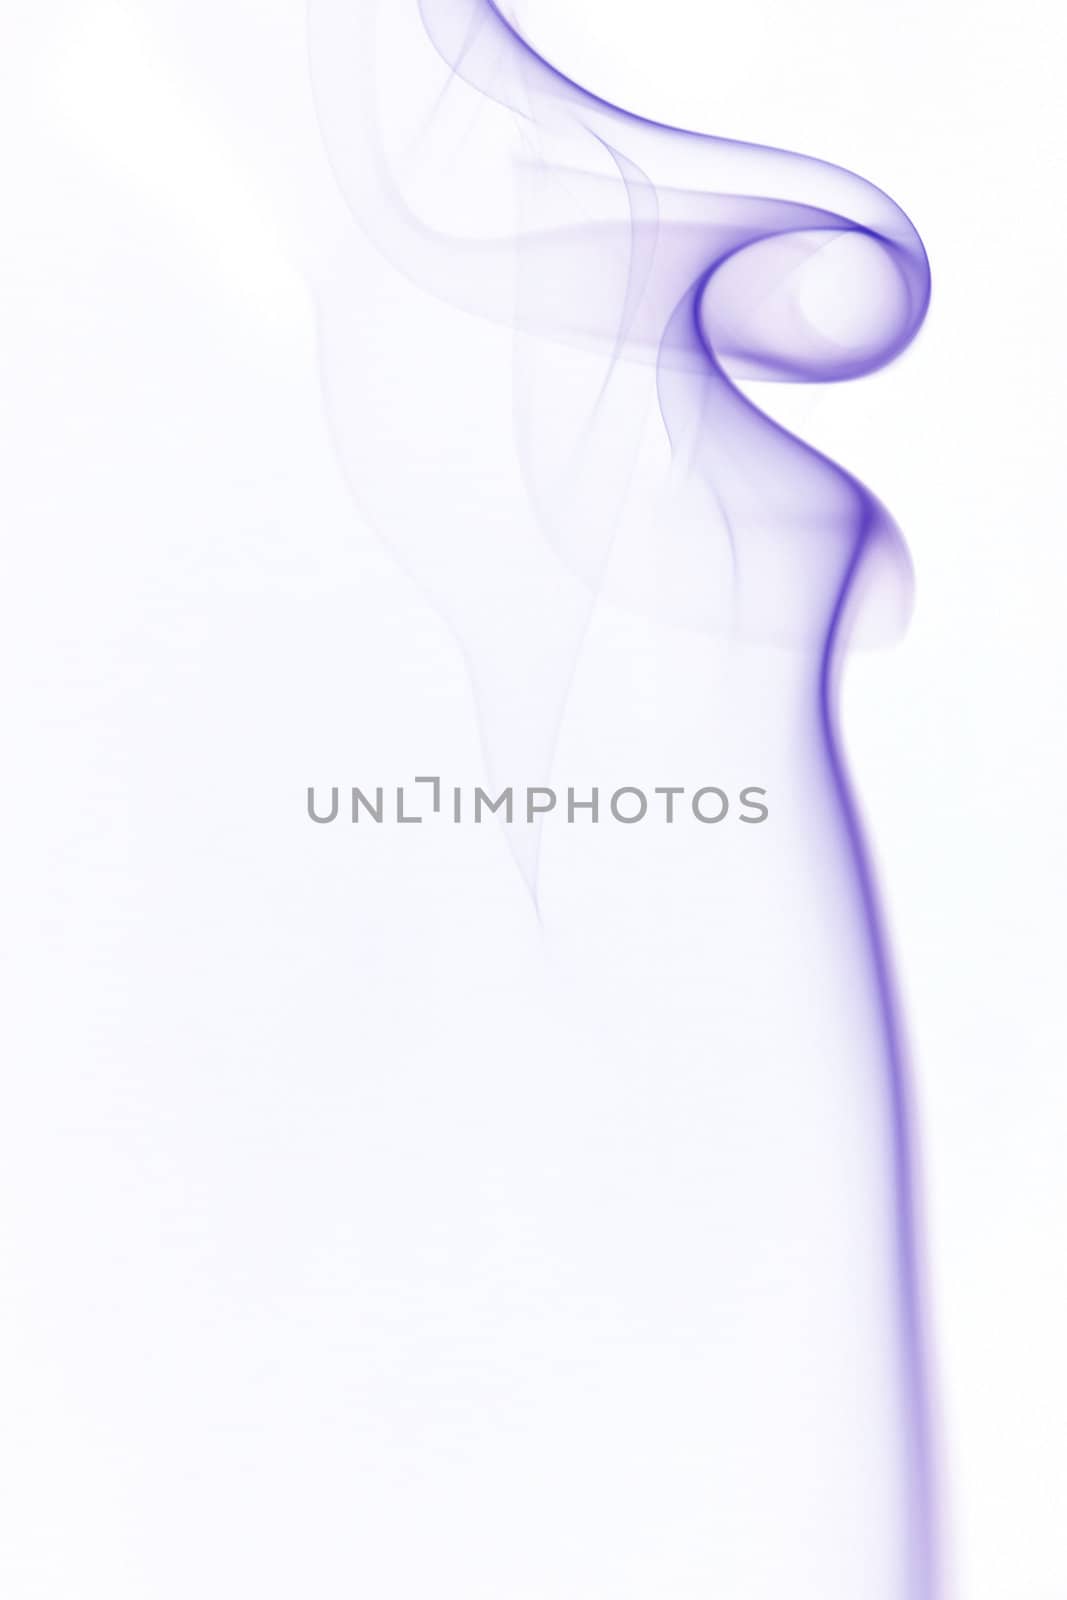 undulating smoke by Mibuch